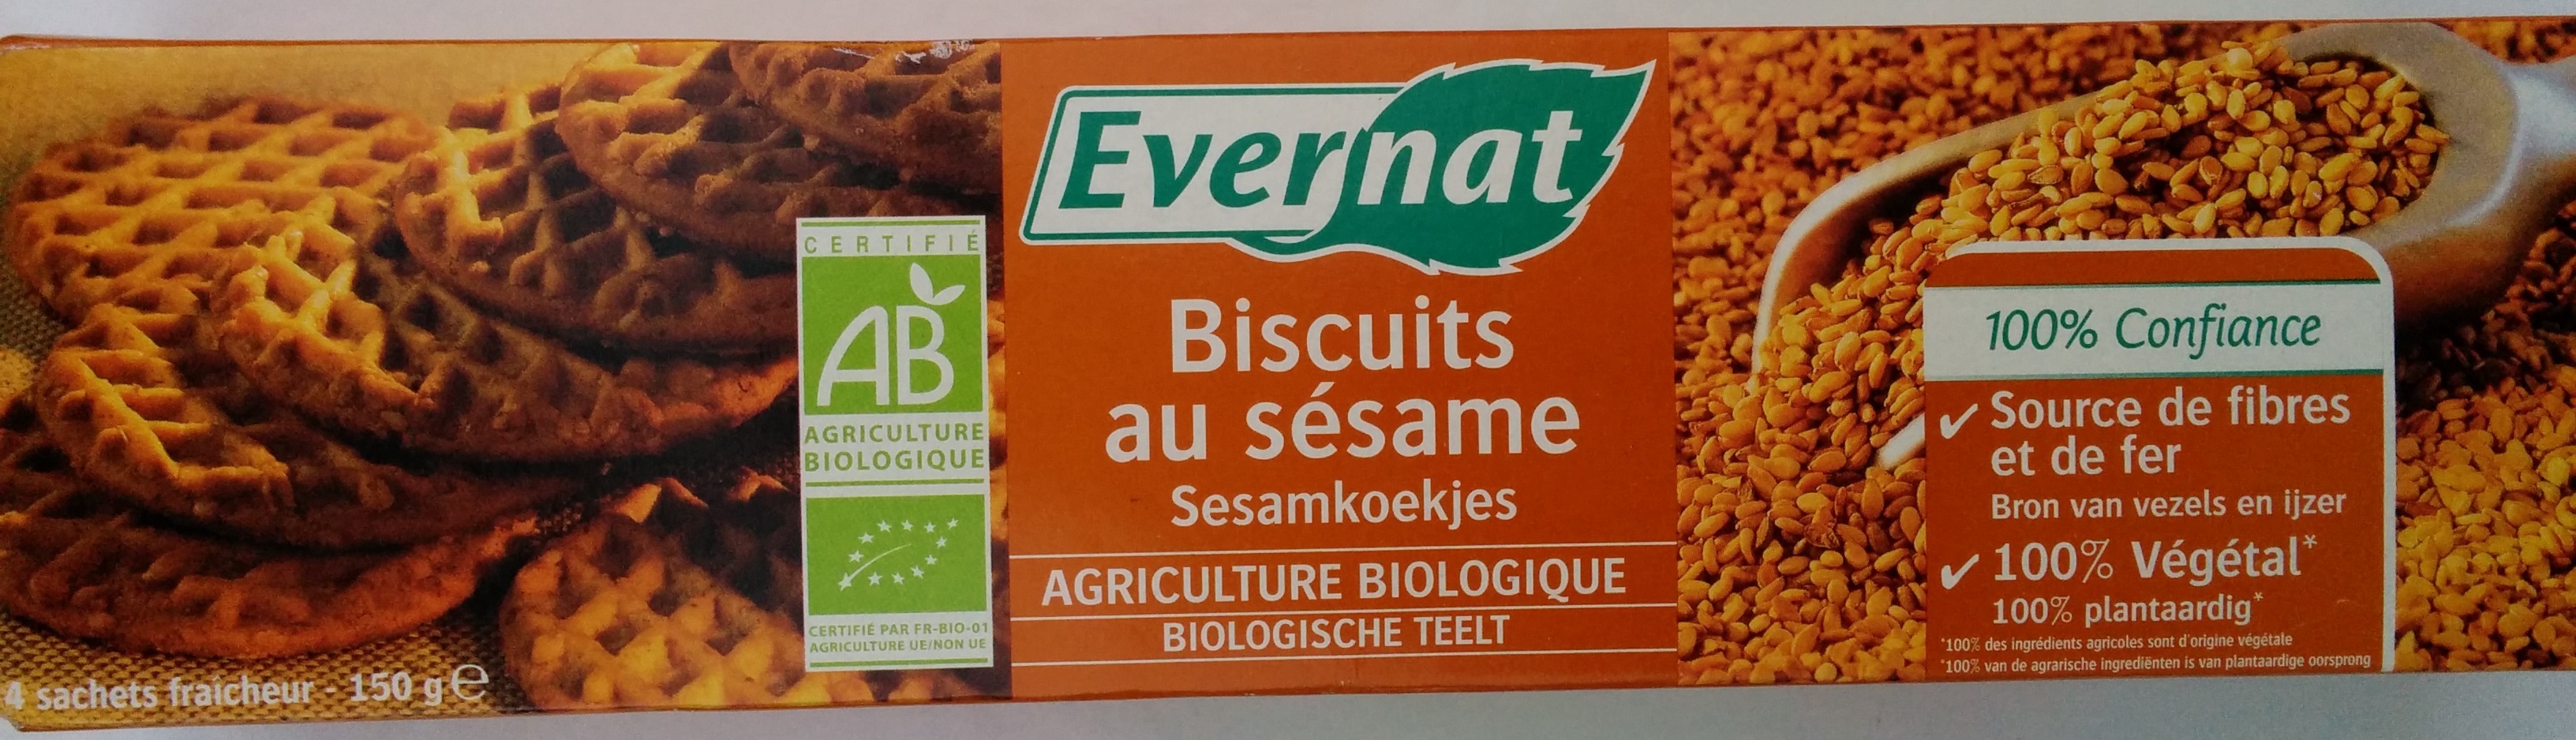 Biscuits au sésame bio - Producto - fr